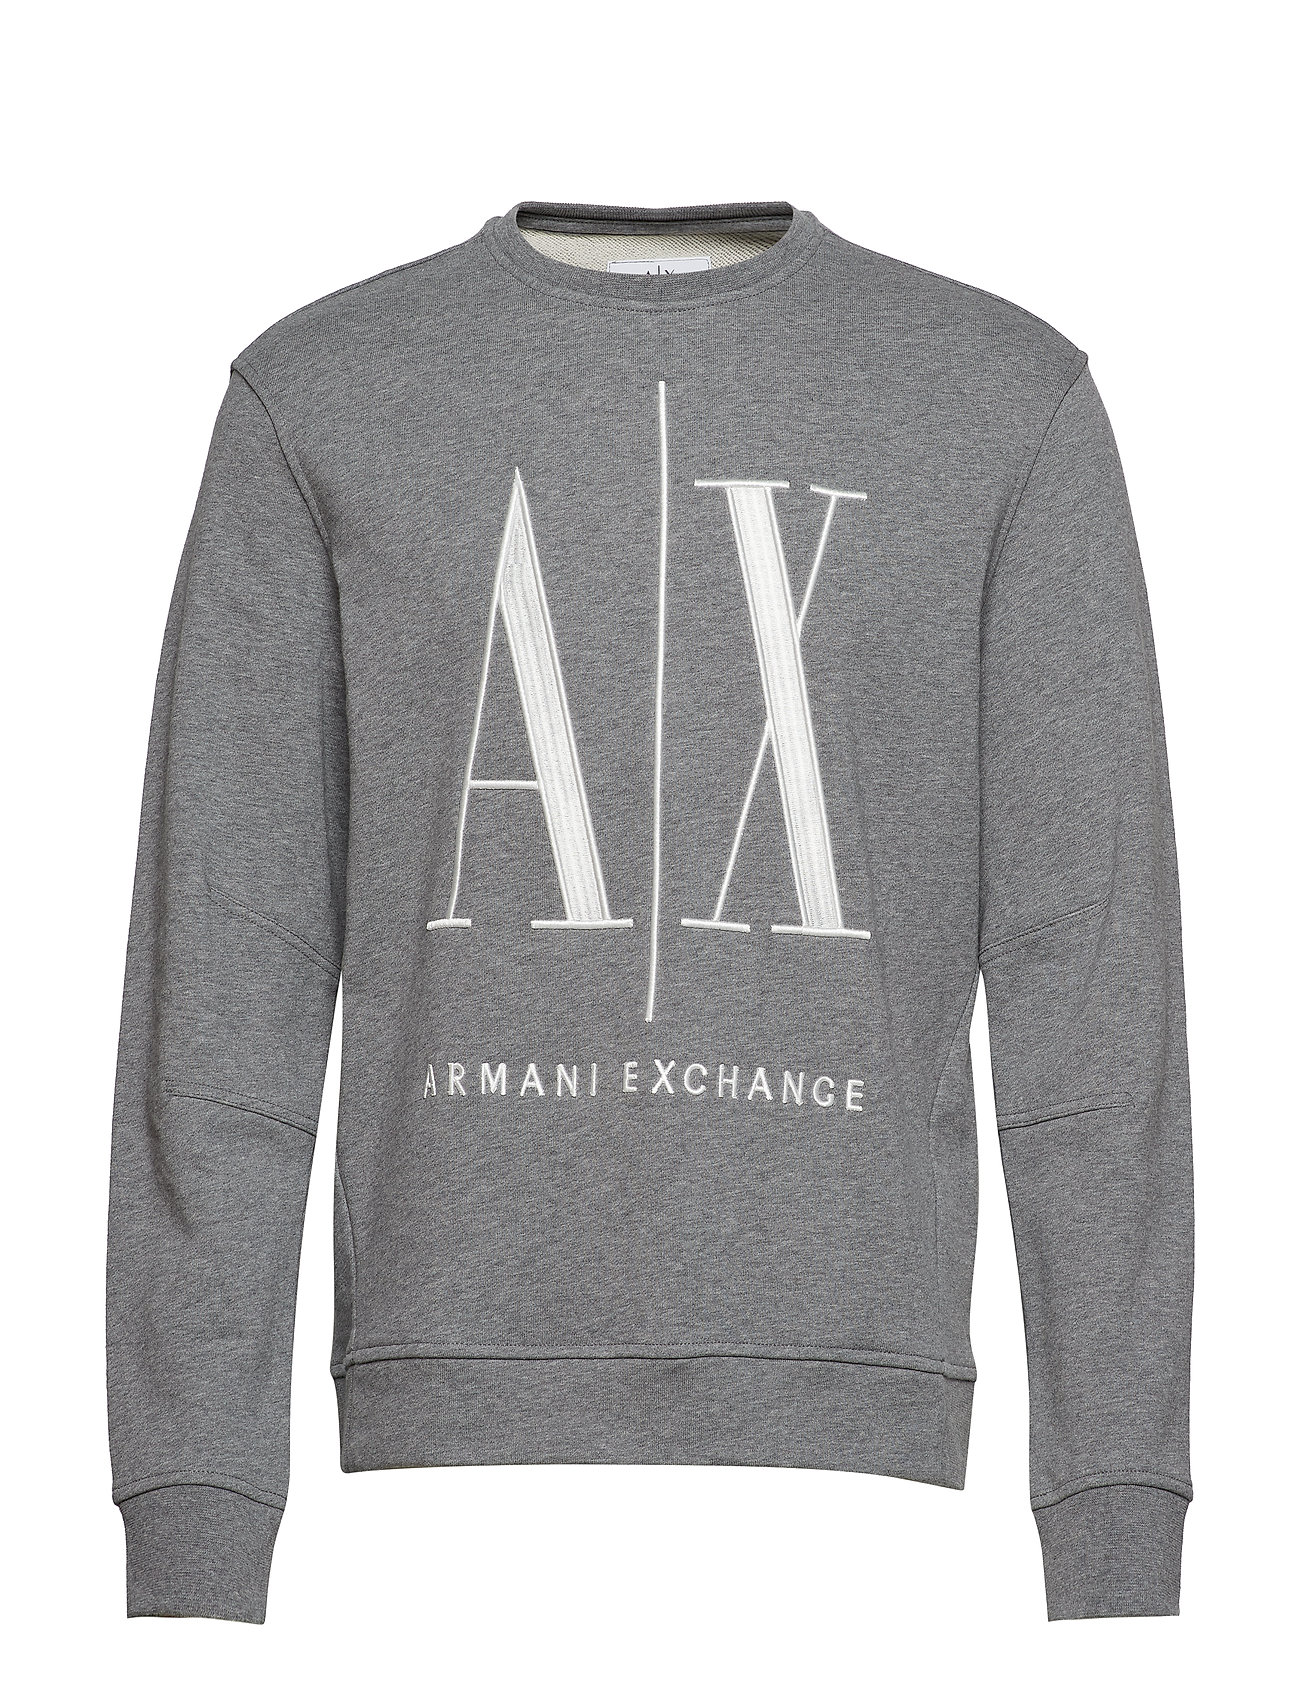 armani exchange sweater